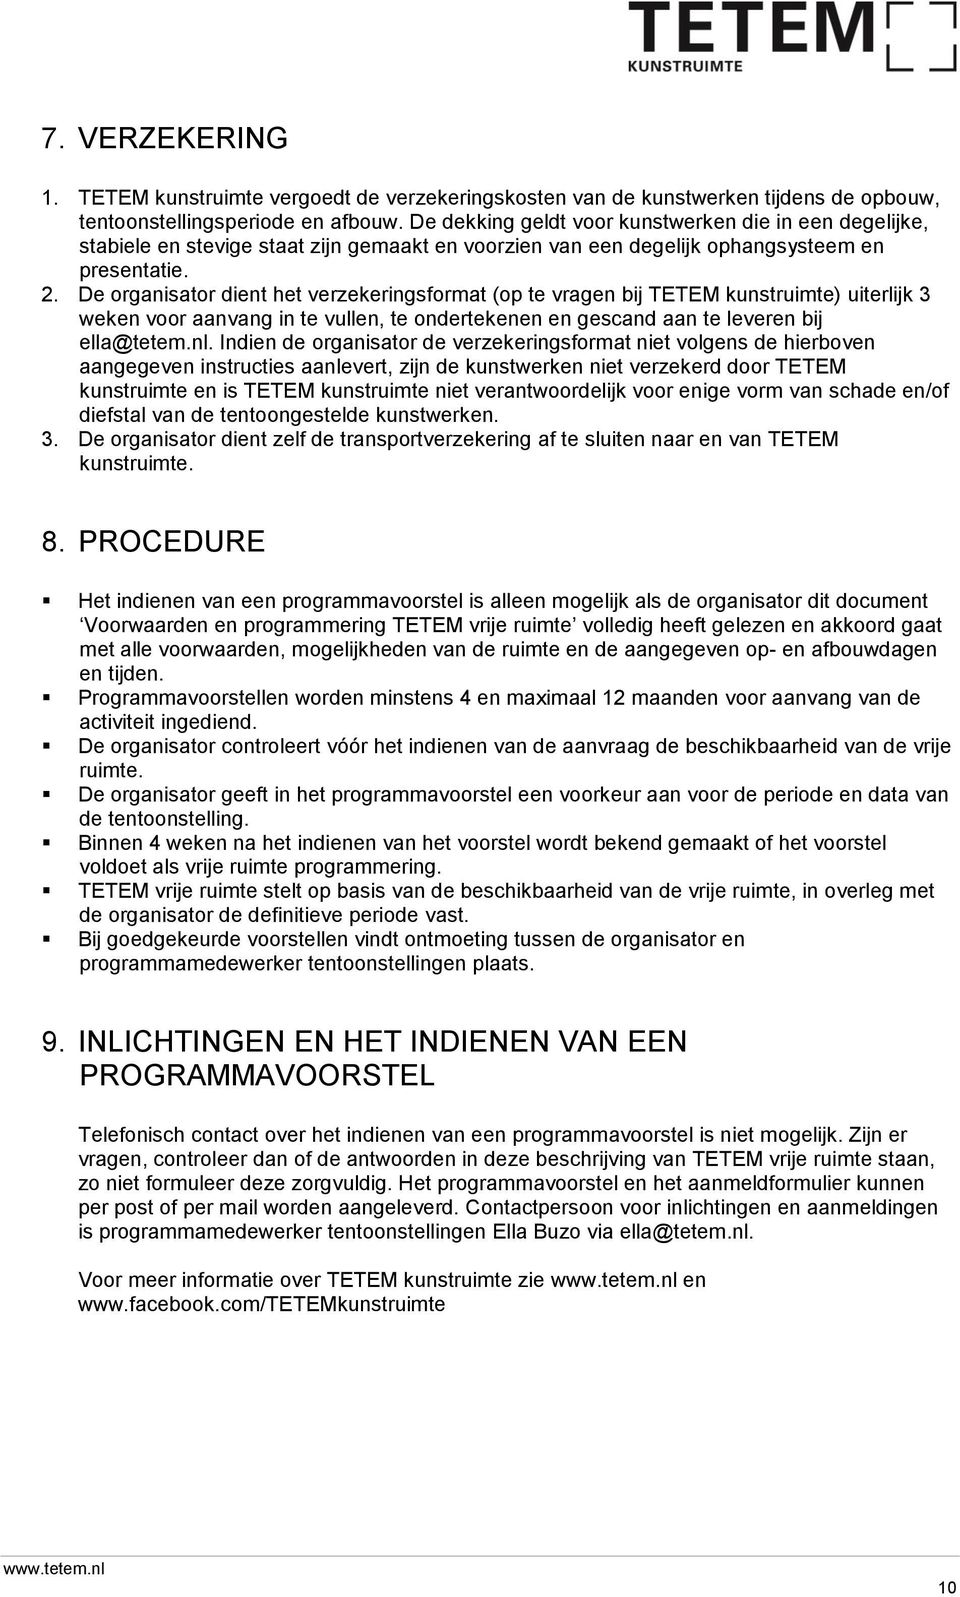 De organisator dient het verzekeringsformat (op te vragen bij TETEM kunstruimte) uiterlijk 3 weken voor aanvang in te vullen, te ondertekenen en gescand aan te leveren bij ella@tetem.nl.